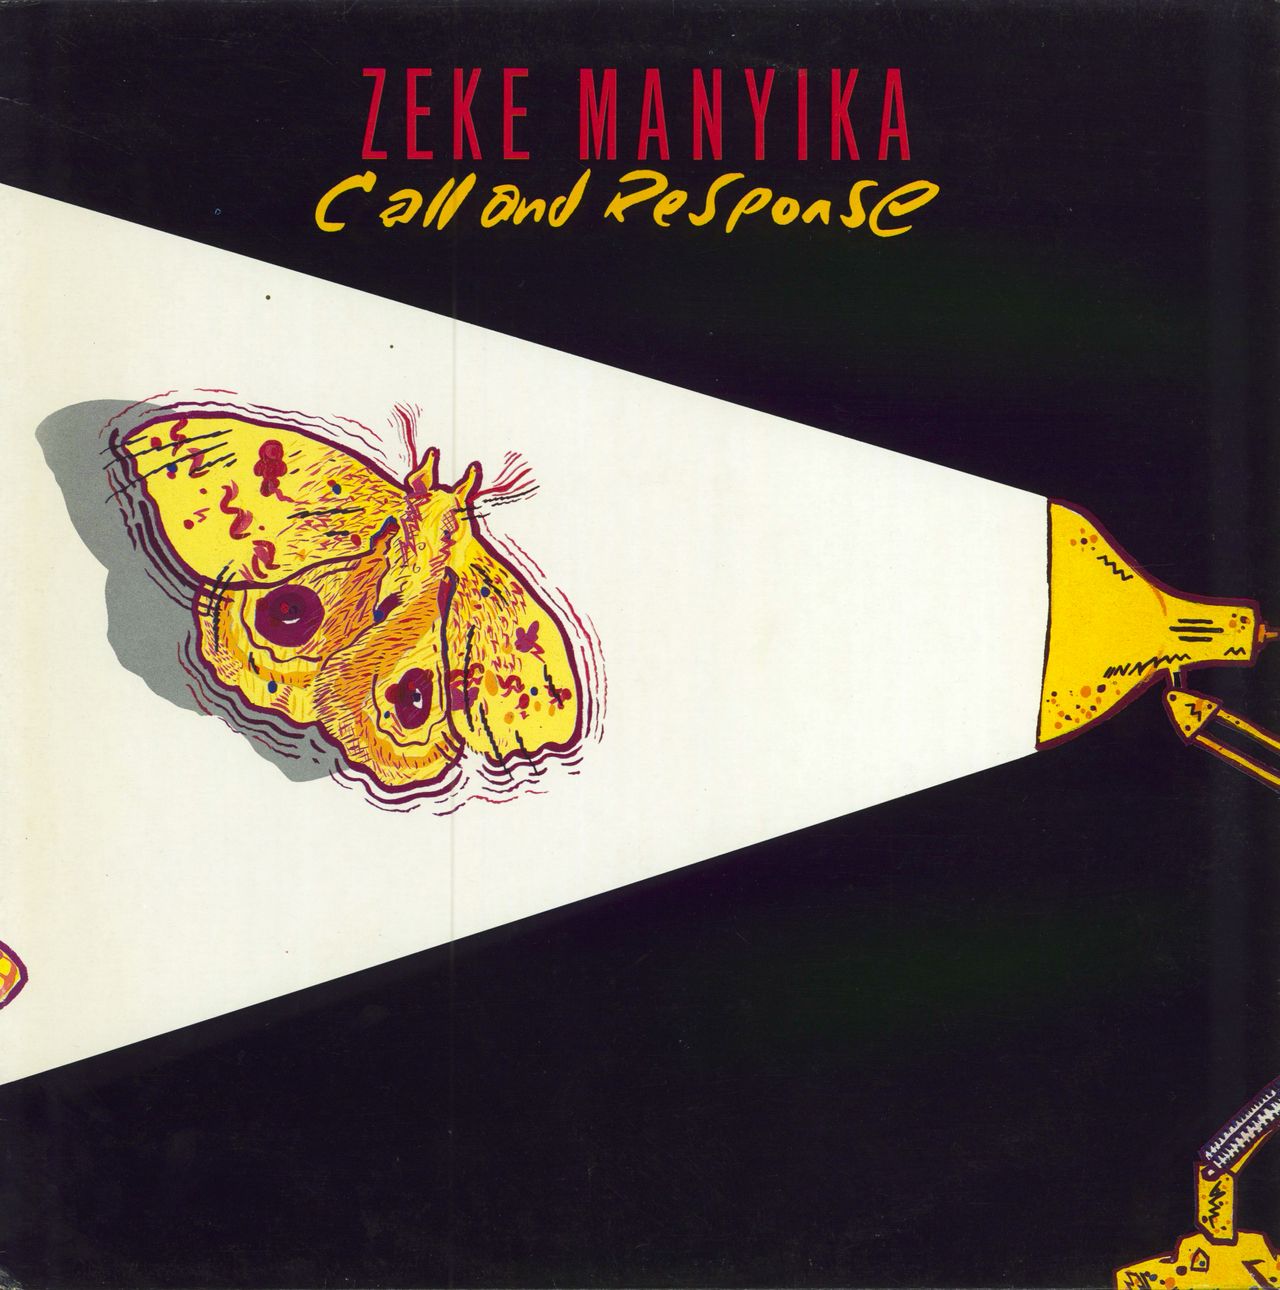 Zeke Manyika